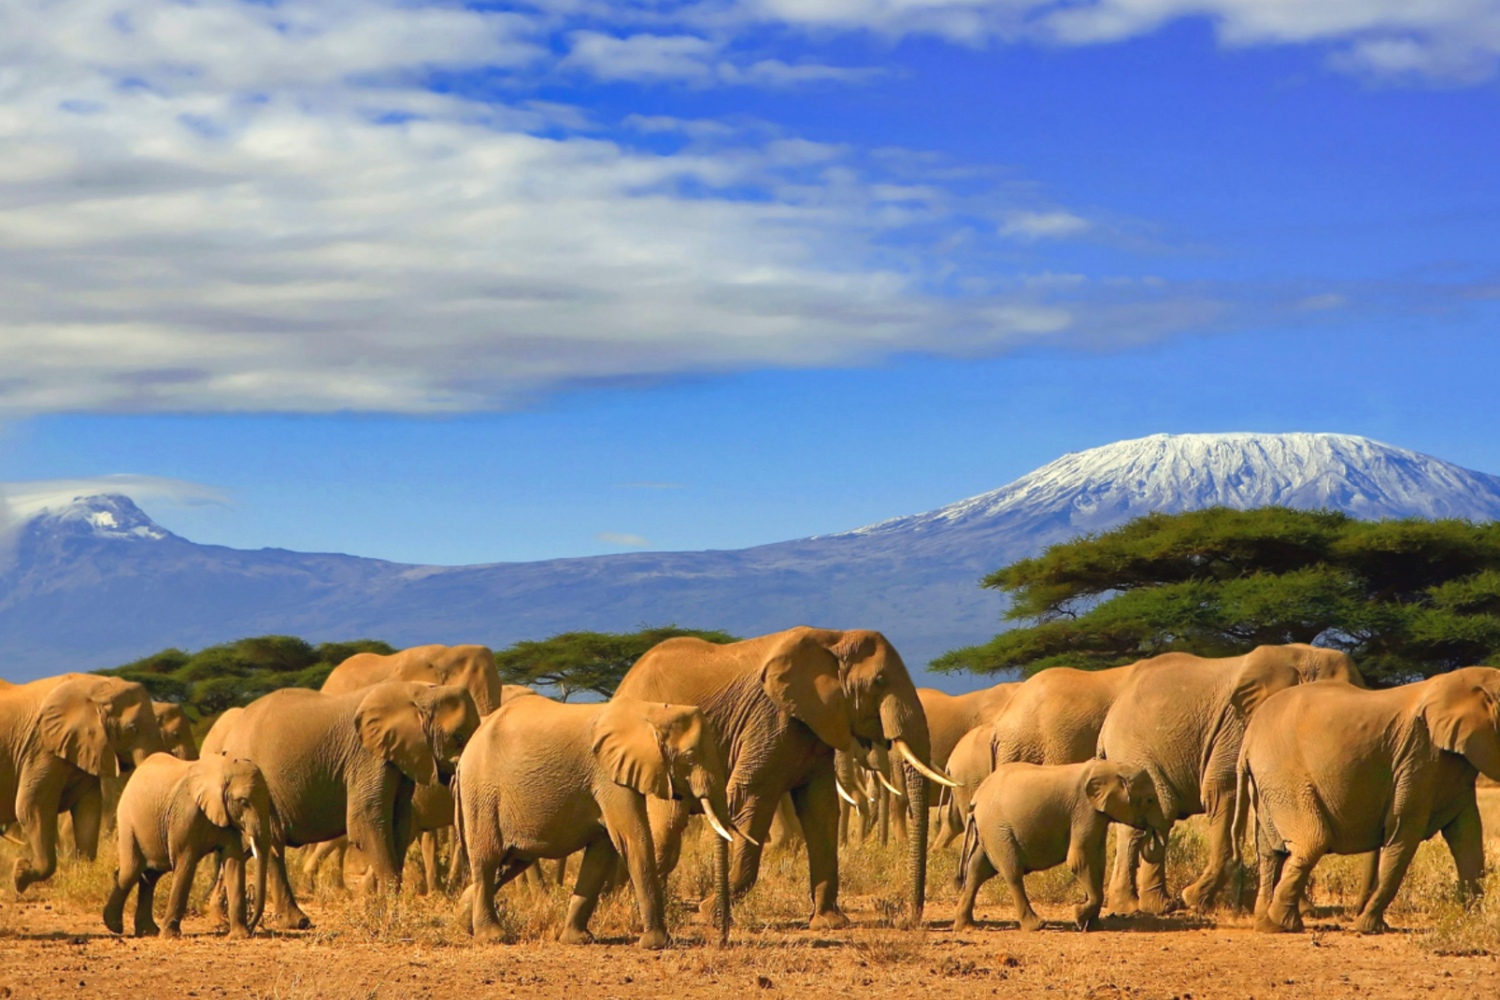 Elephants in ngorongoro national park